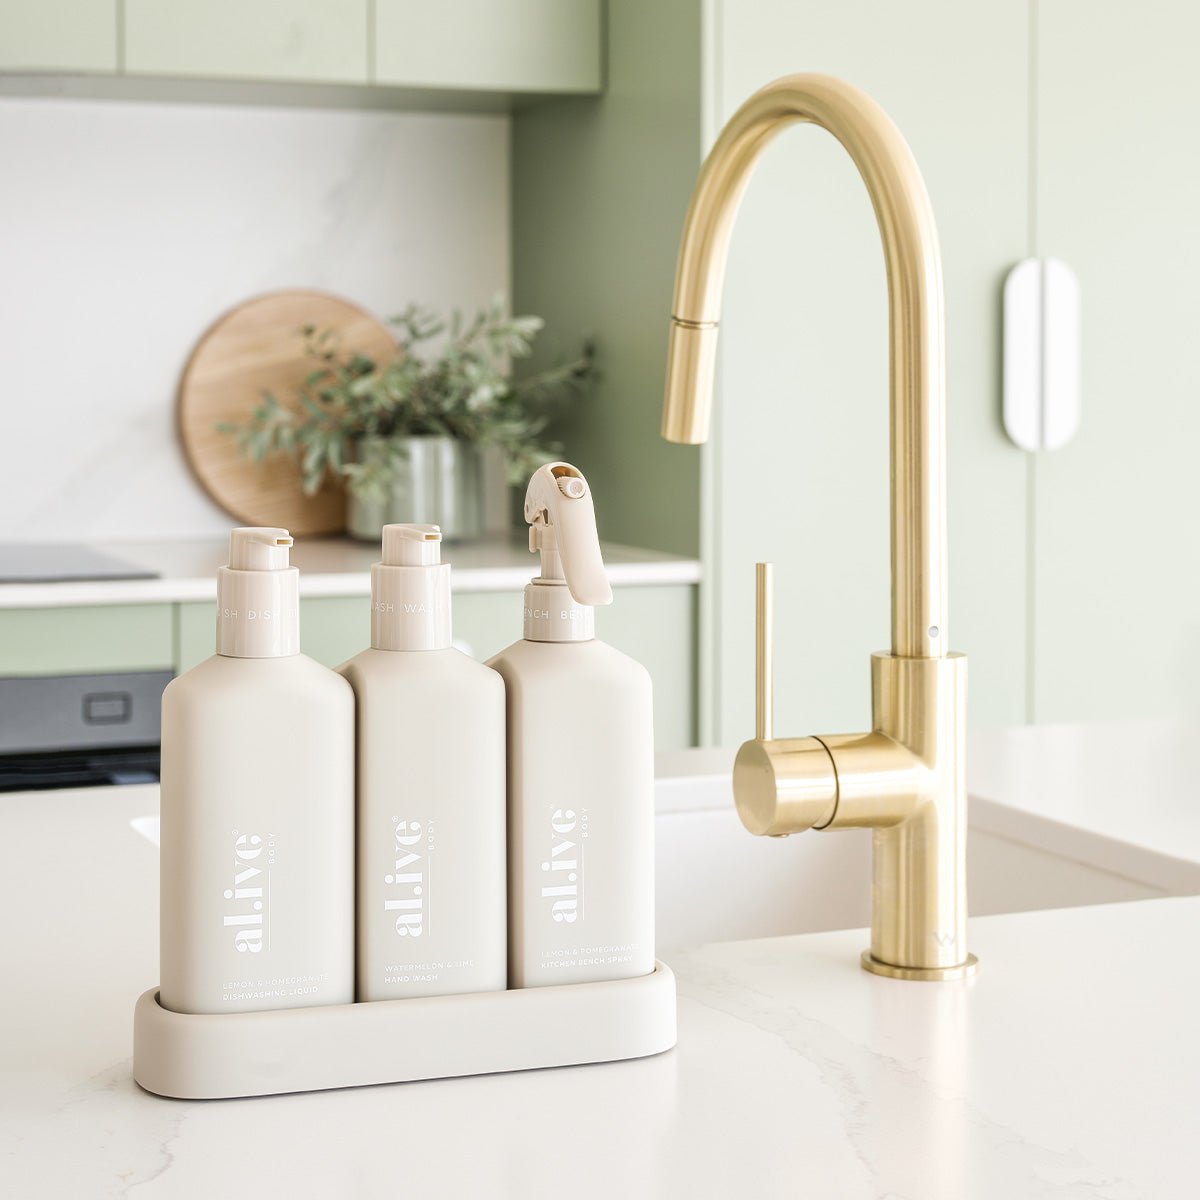 Al.ive Premium Kitchen Trio - Dishwashing Liquid + Hand Wash & Bench Spray